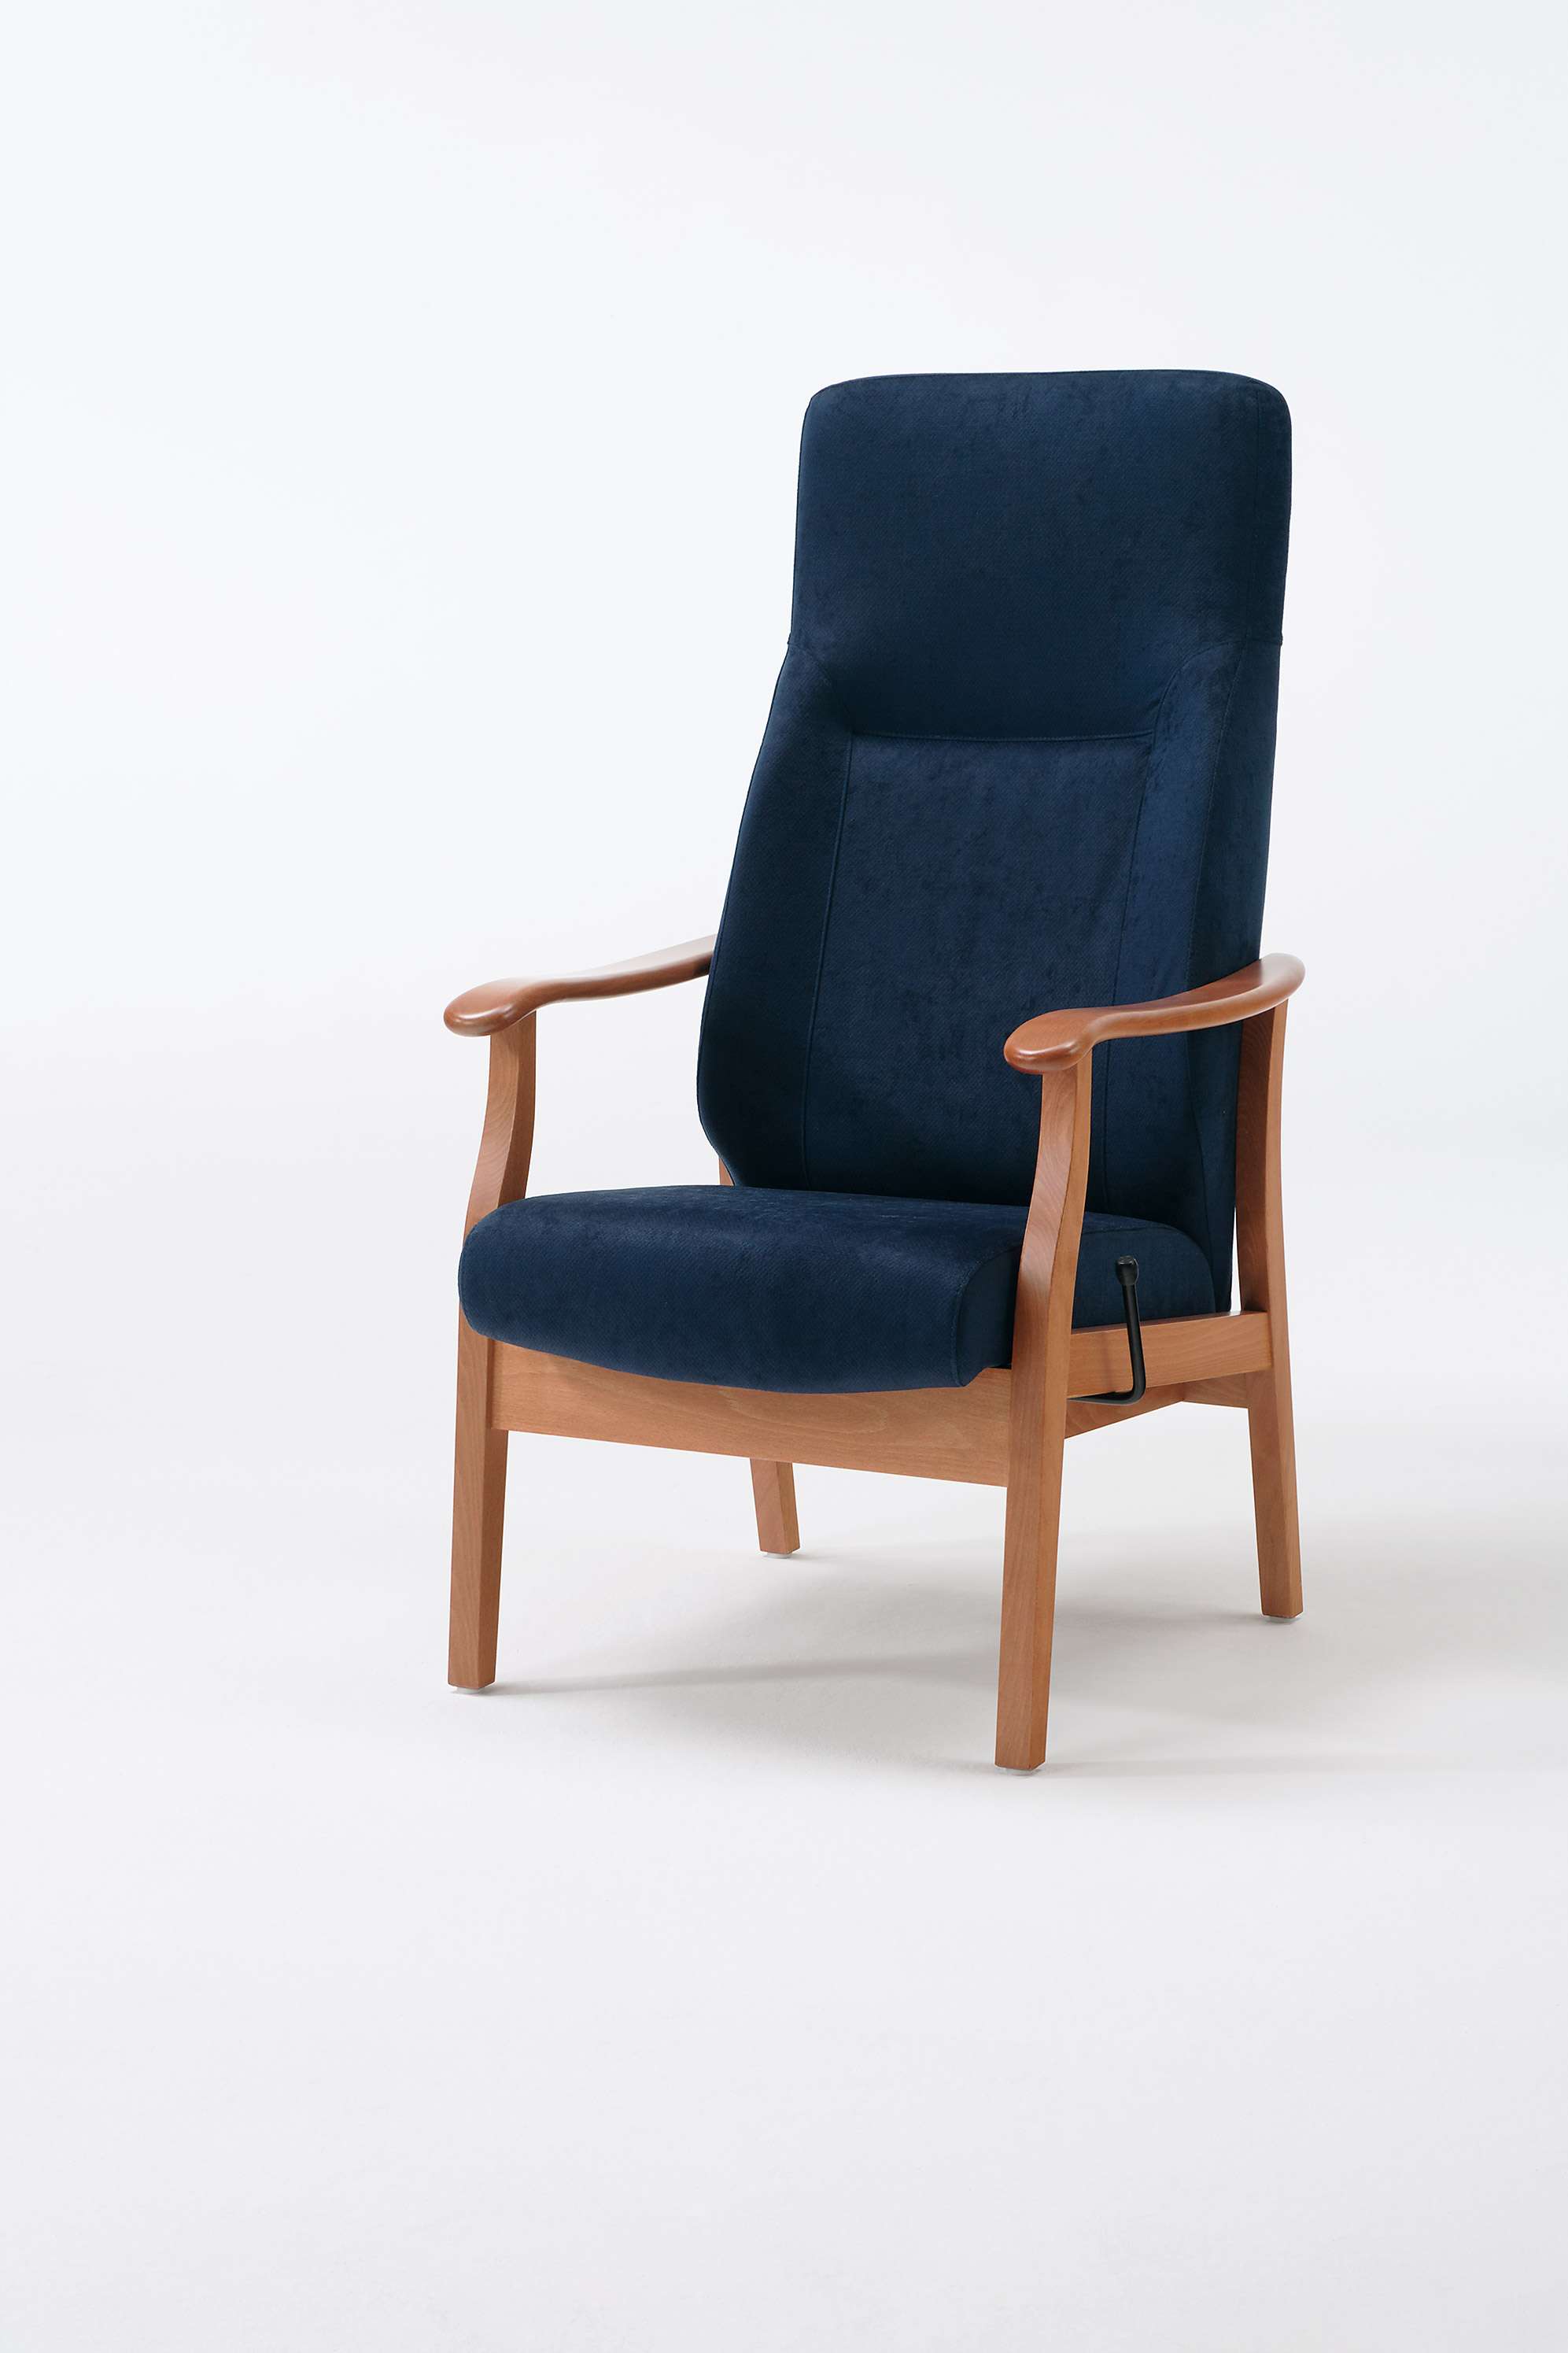 Sedego-tuoli korkealla selkänojalla varustettuna säädettävänä nojatuolina